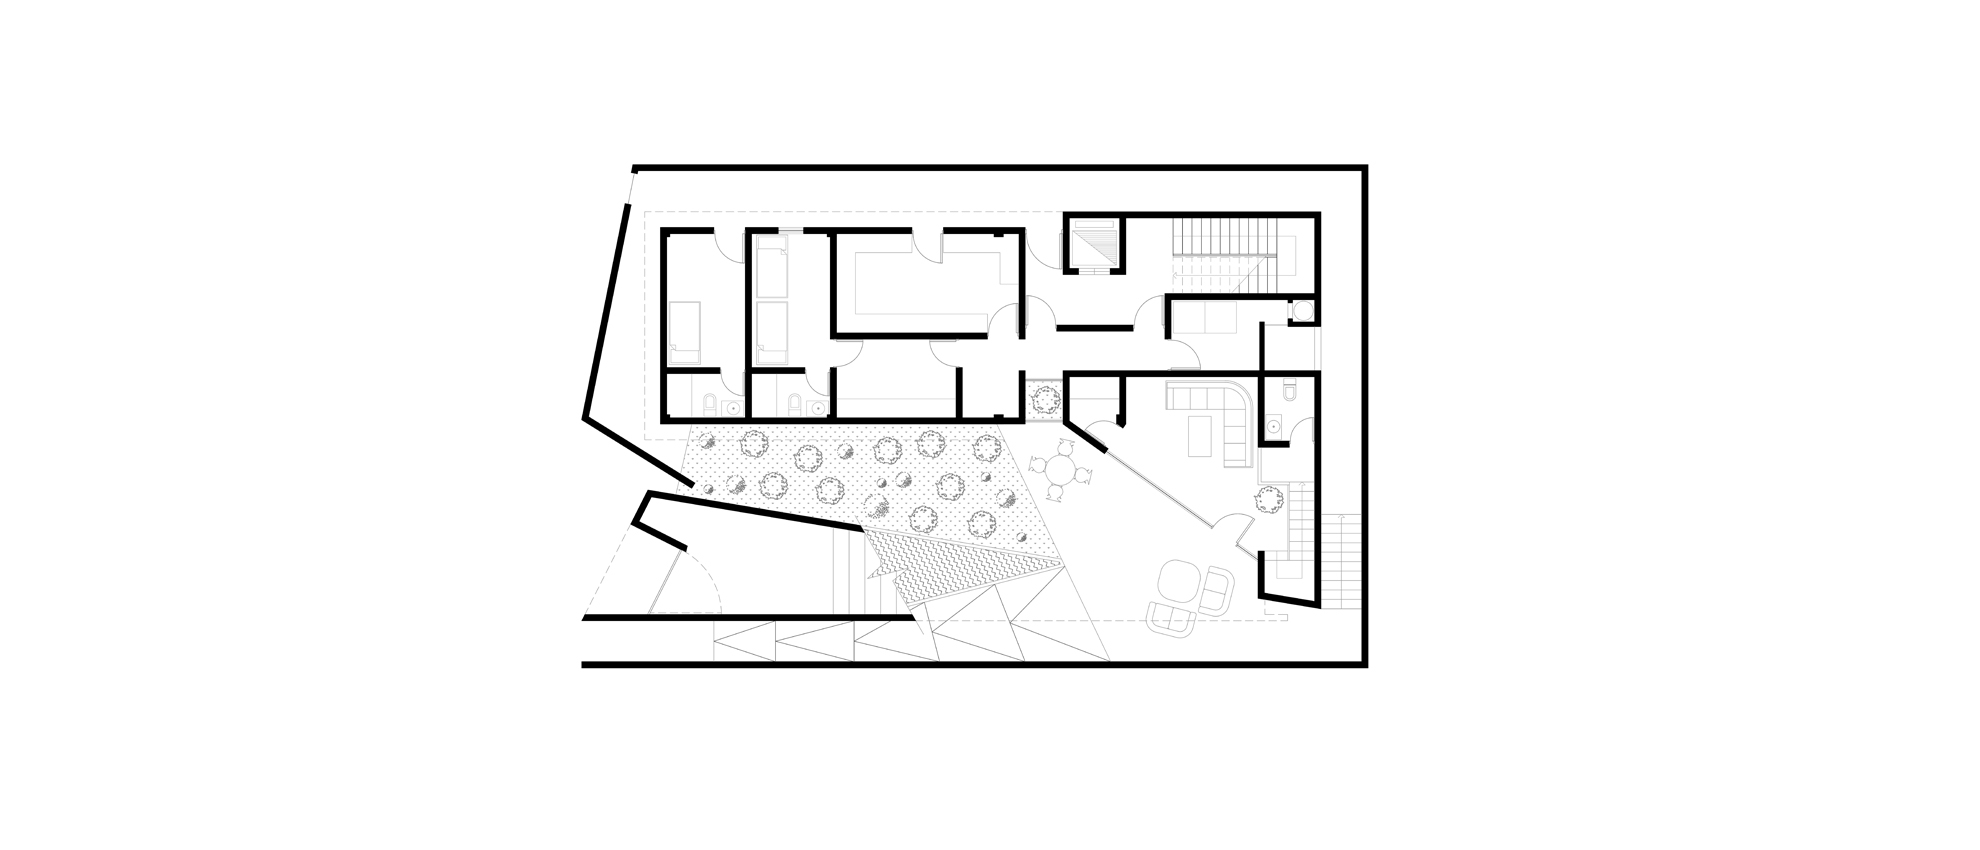 1Basement Floor Plan